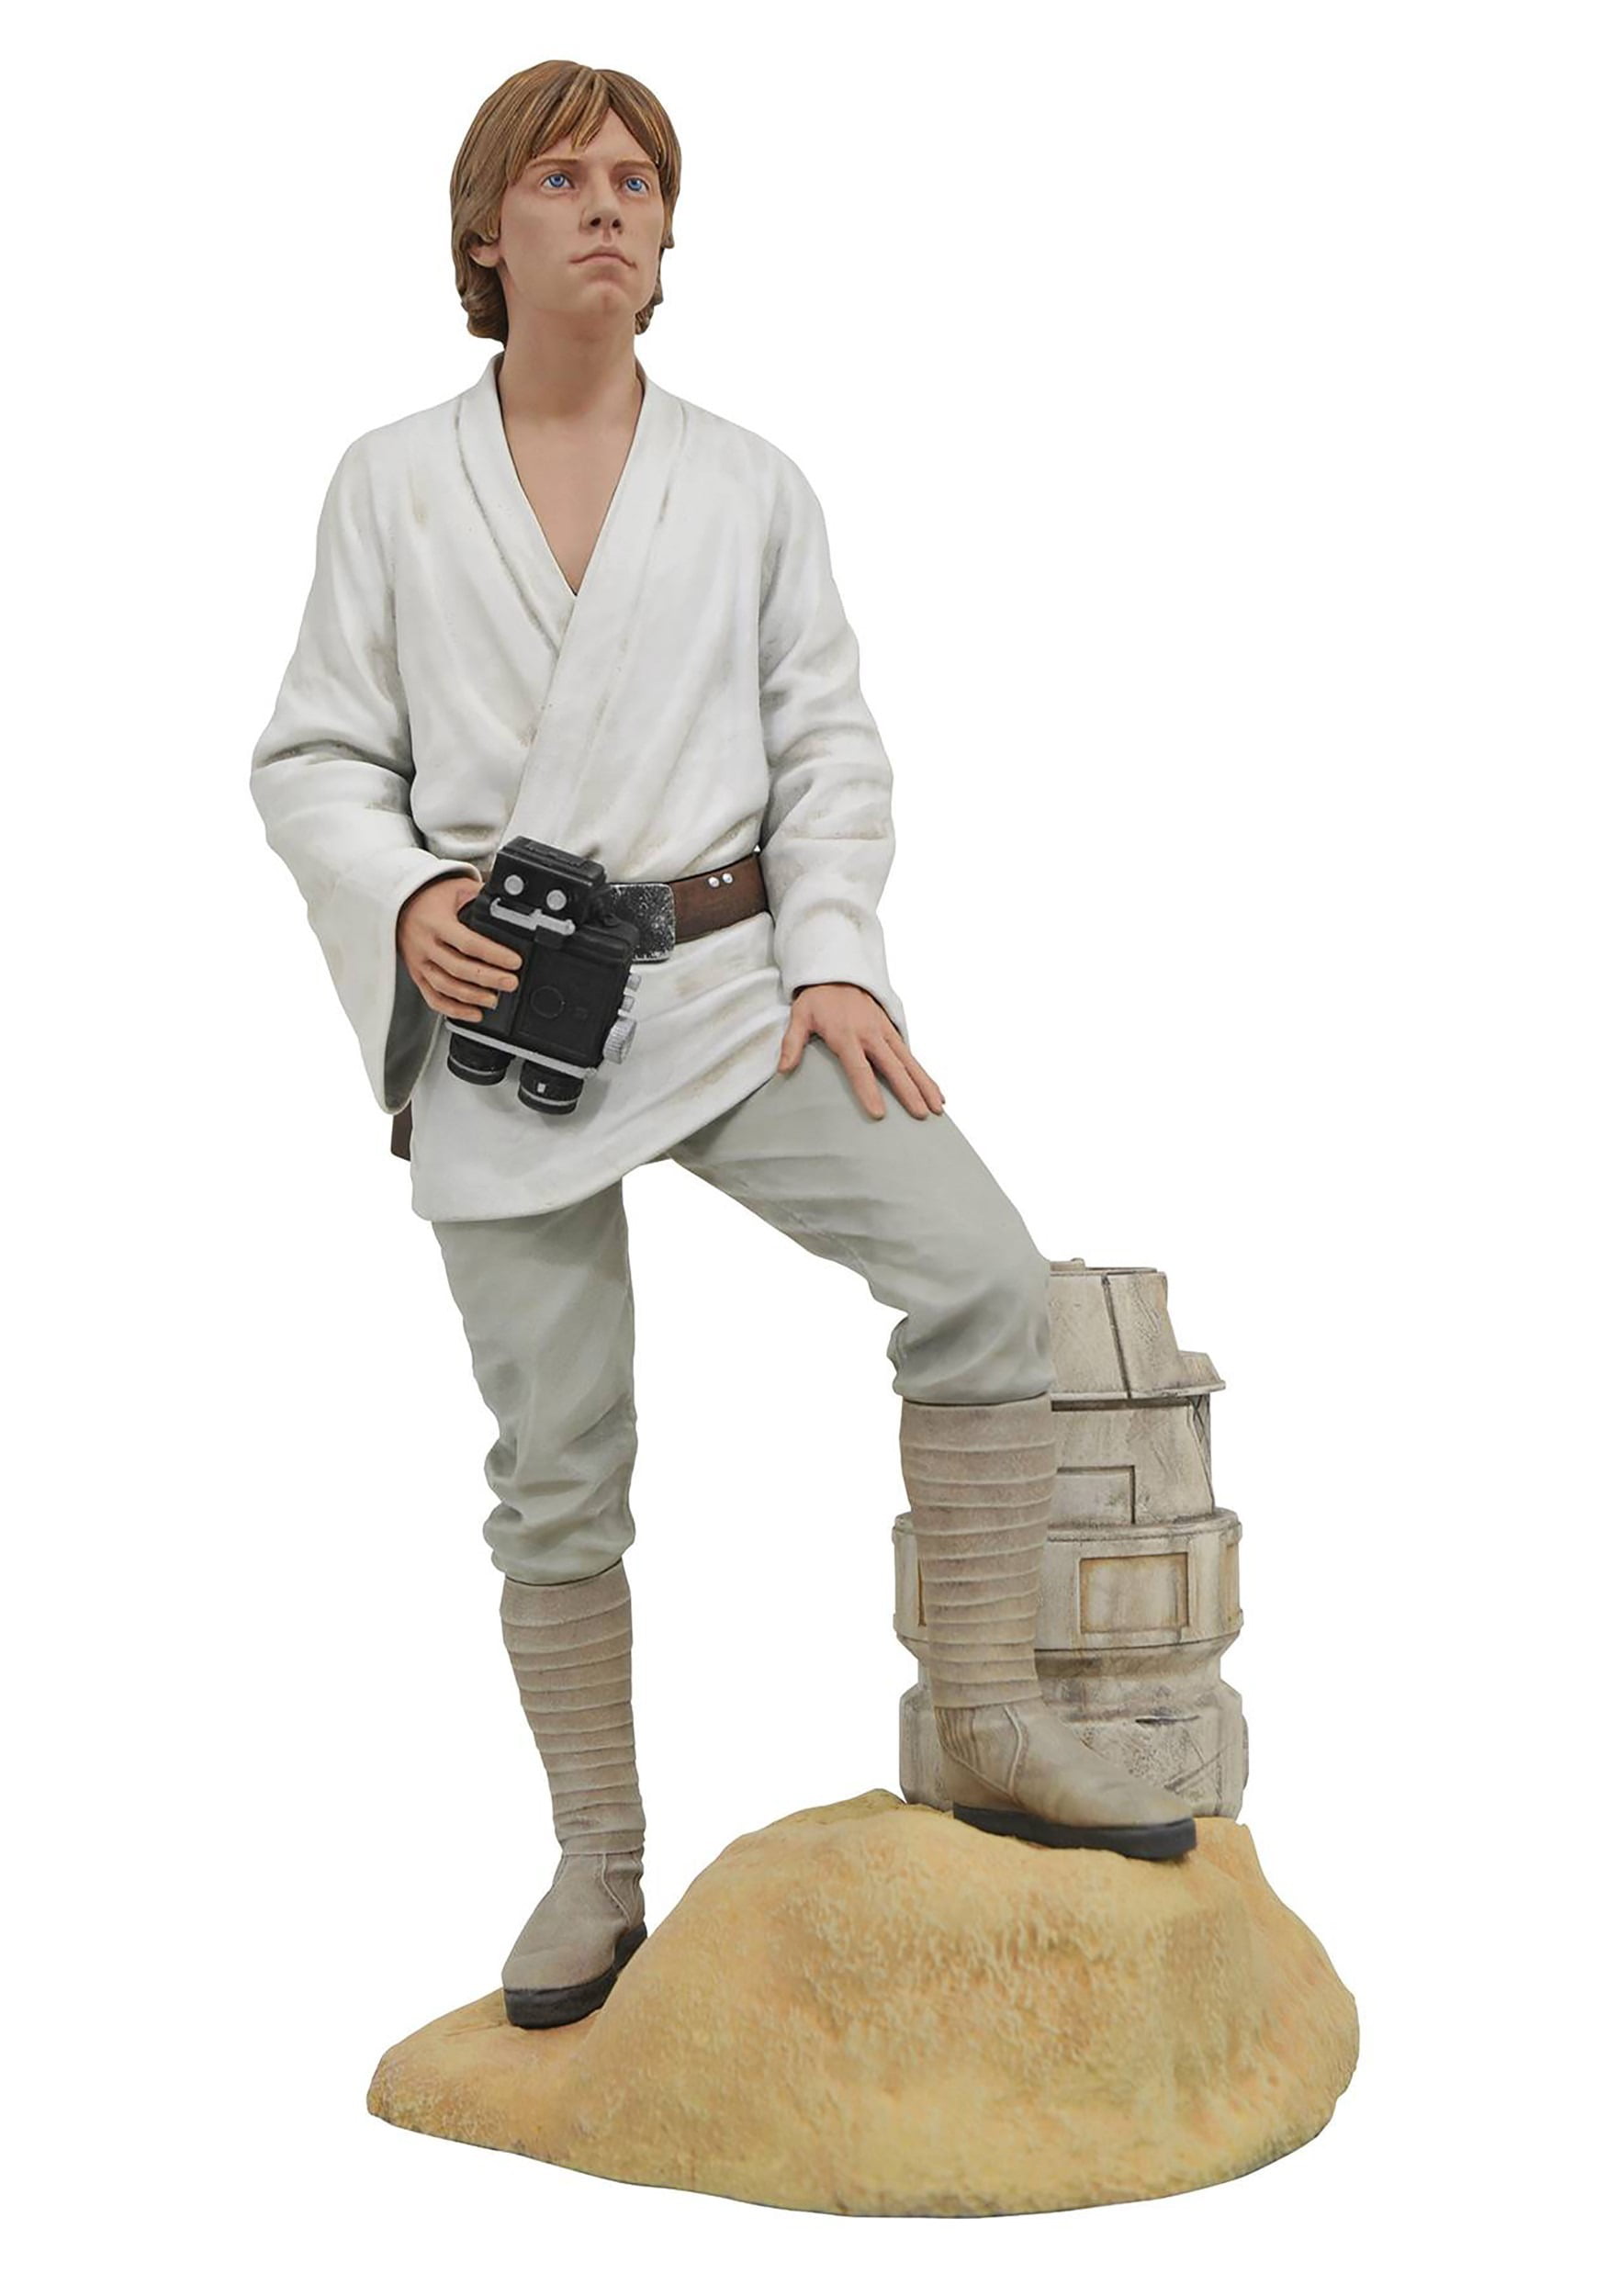 Farm Boy Dreamer Star Wars Mini Poster 8" x 11" Luke Skywalker 